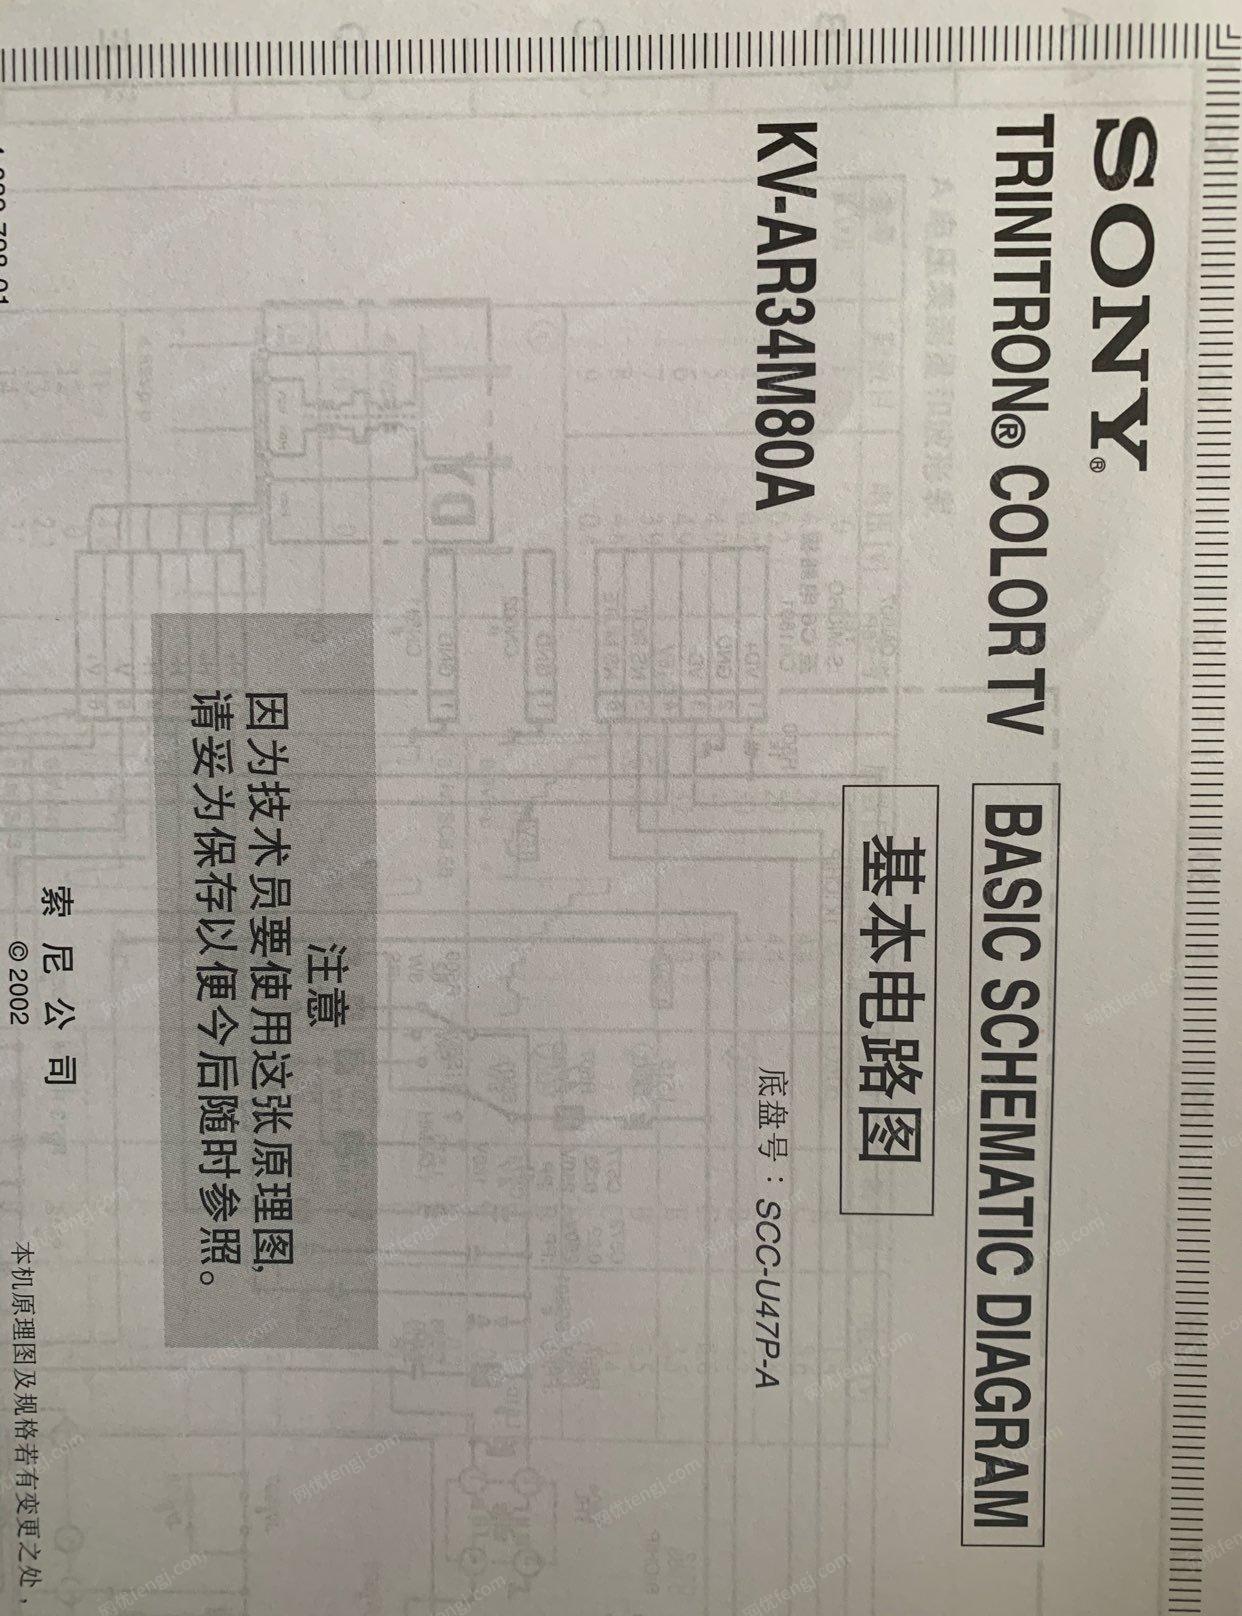 上海嘉定区34寸索尼特丽珑CRT电视机出售